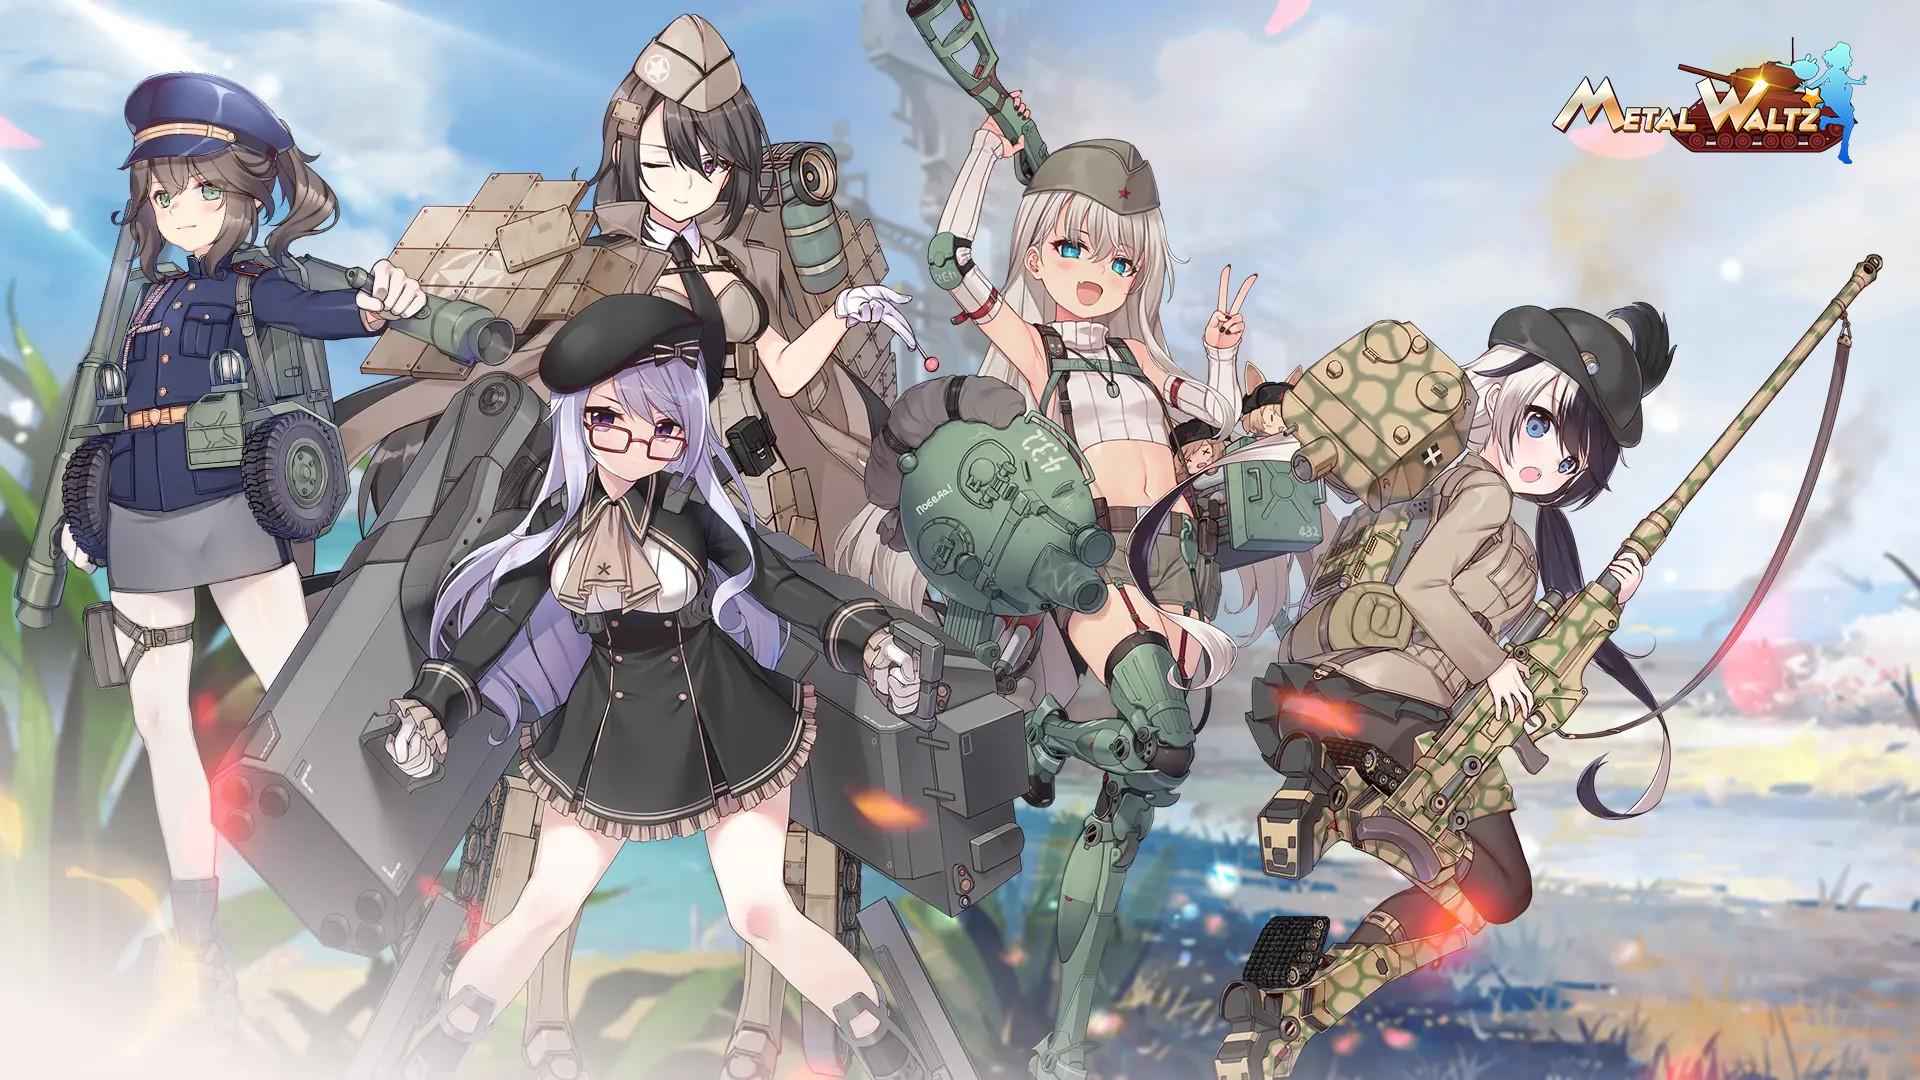 Banner of Metal Waltz: Gadis tank anime 1.8